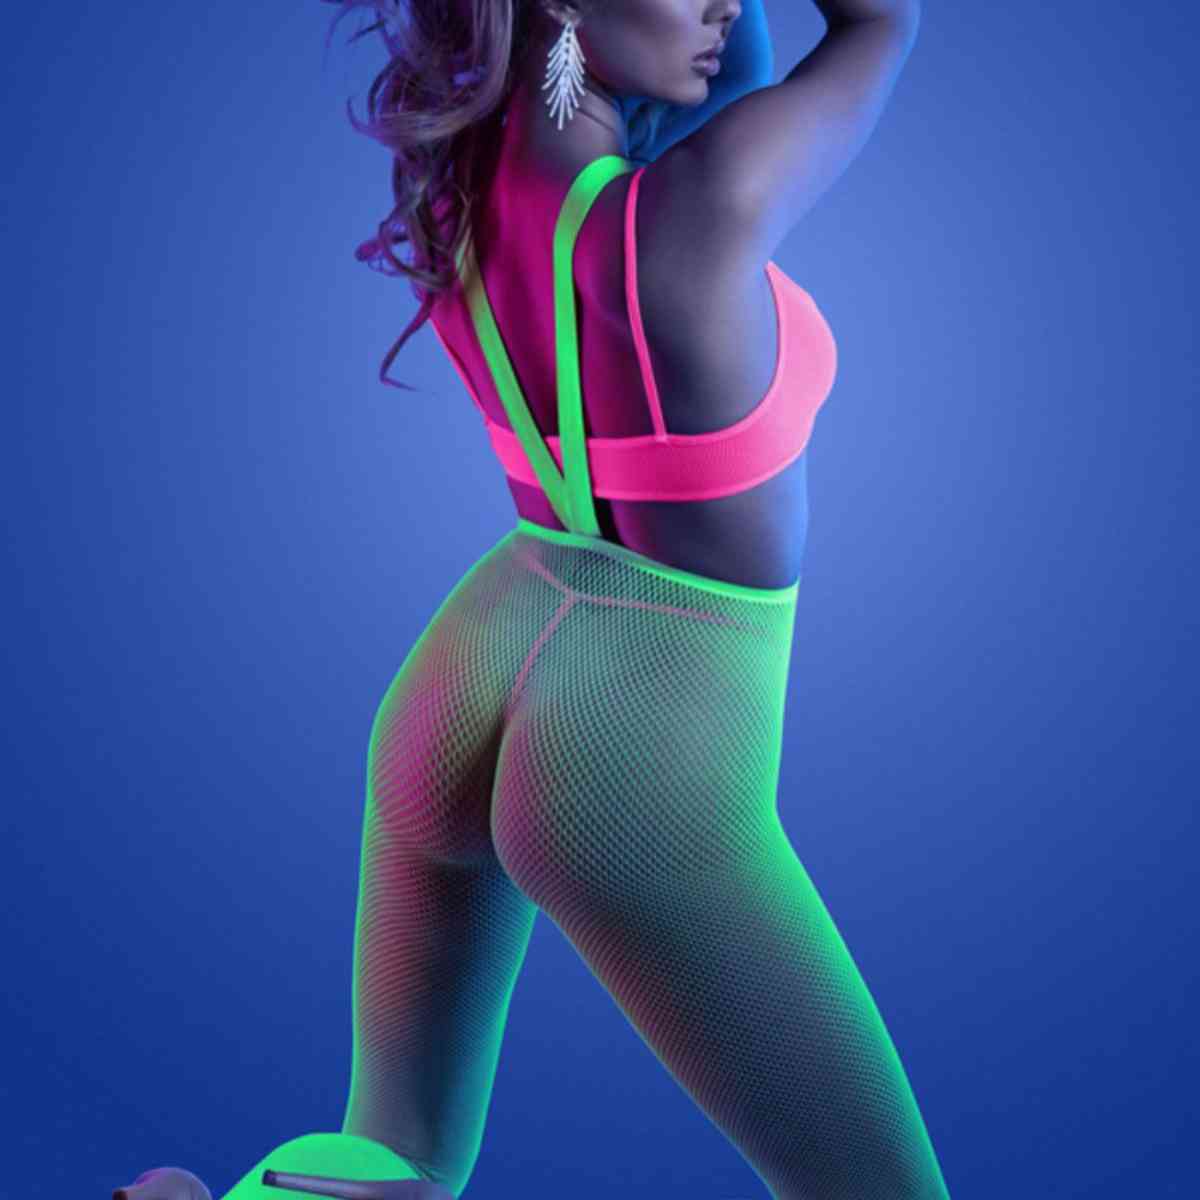 Frau in sexy Neon-Bodystocking-Set von hinten